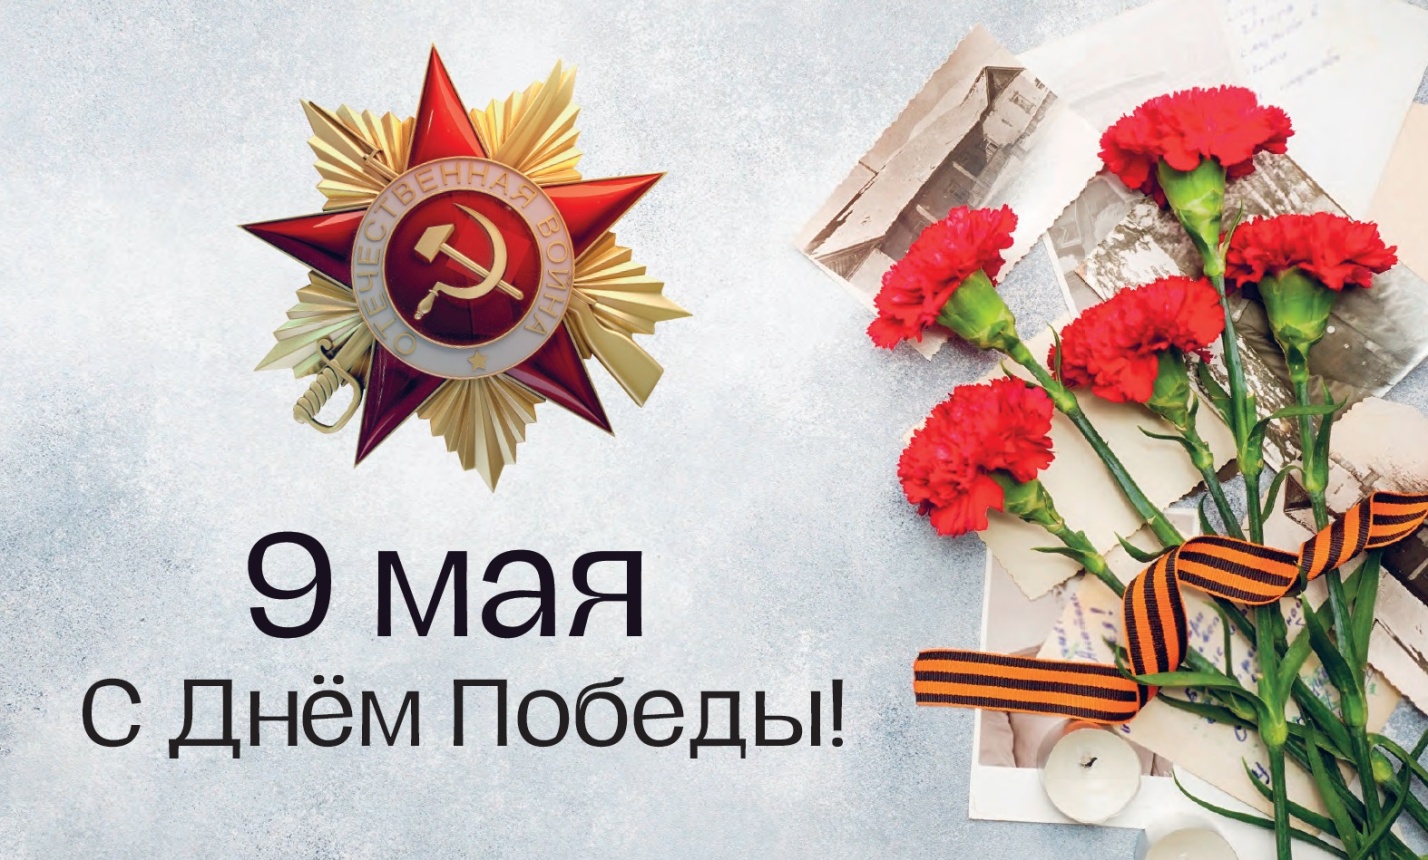 45 ветеранов Великой Отечественной войны в Астраханской области получили единовременные выплаты ко Дню Победы